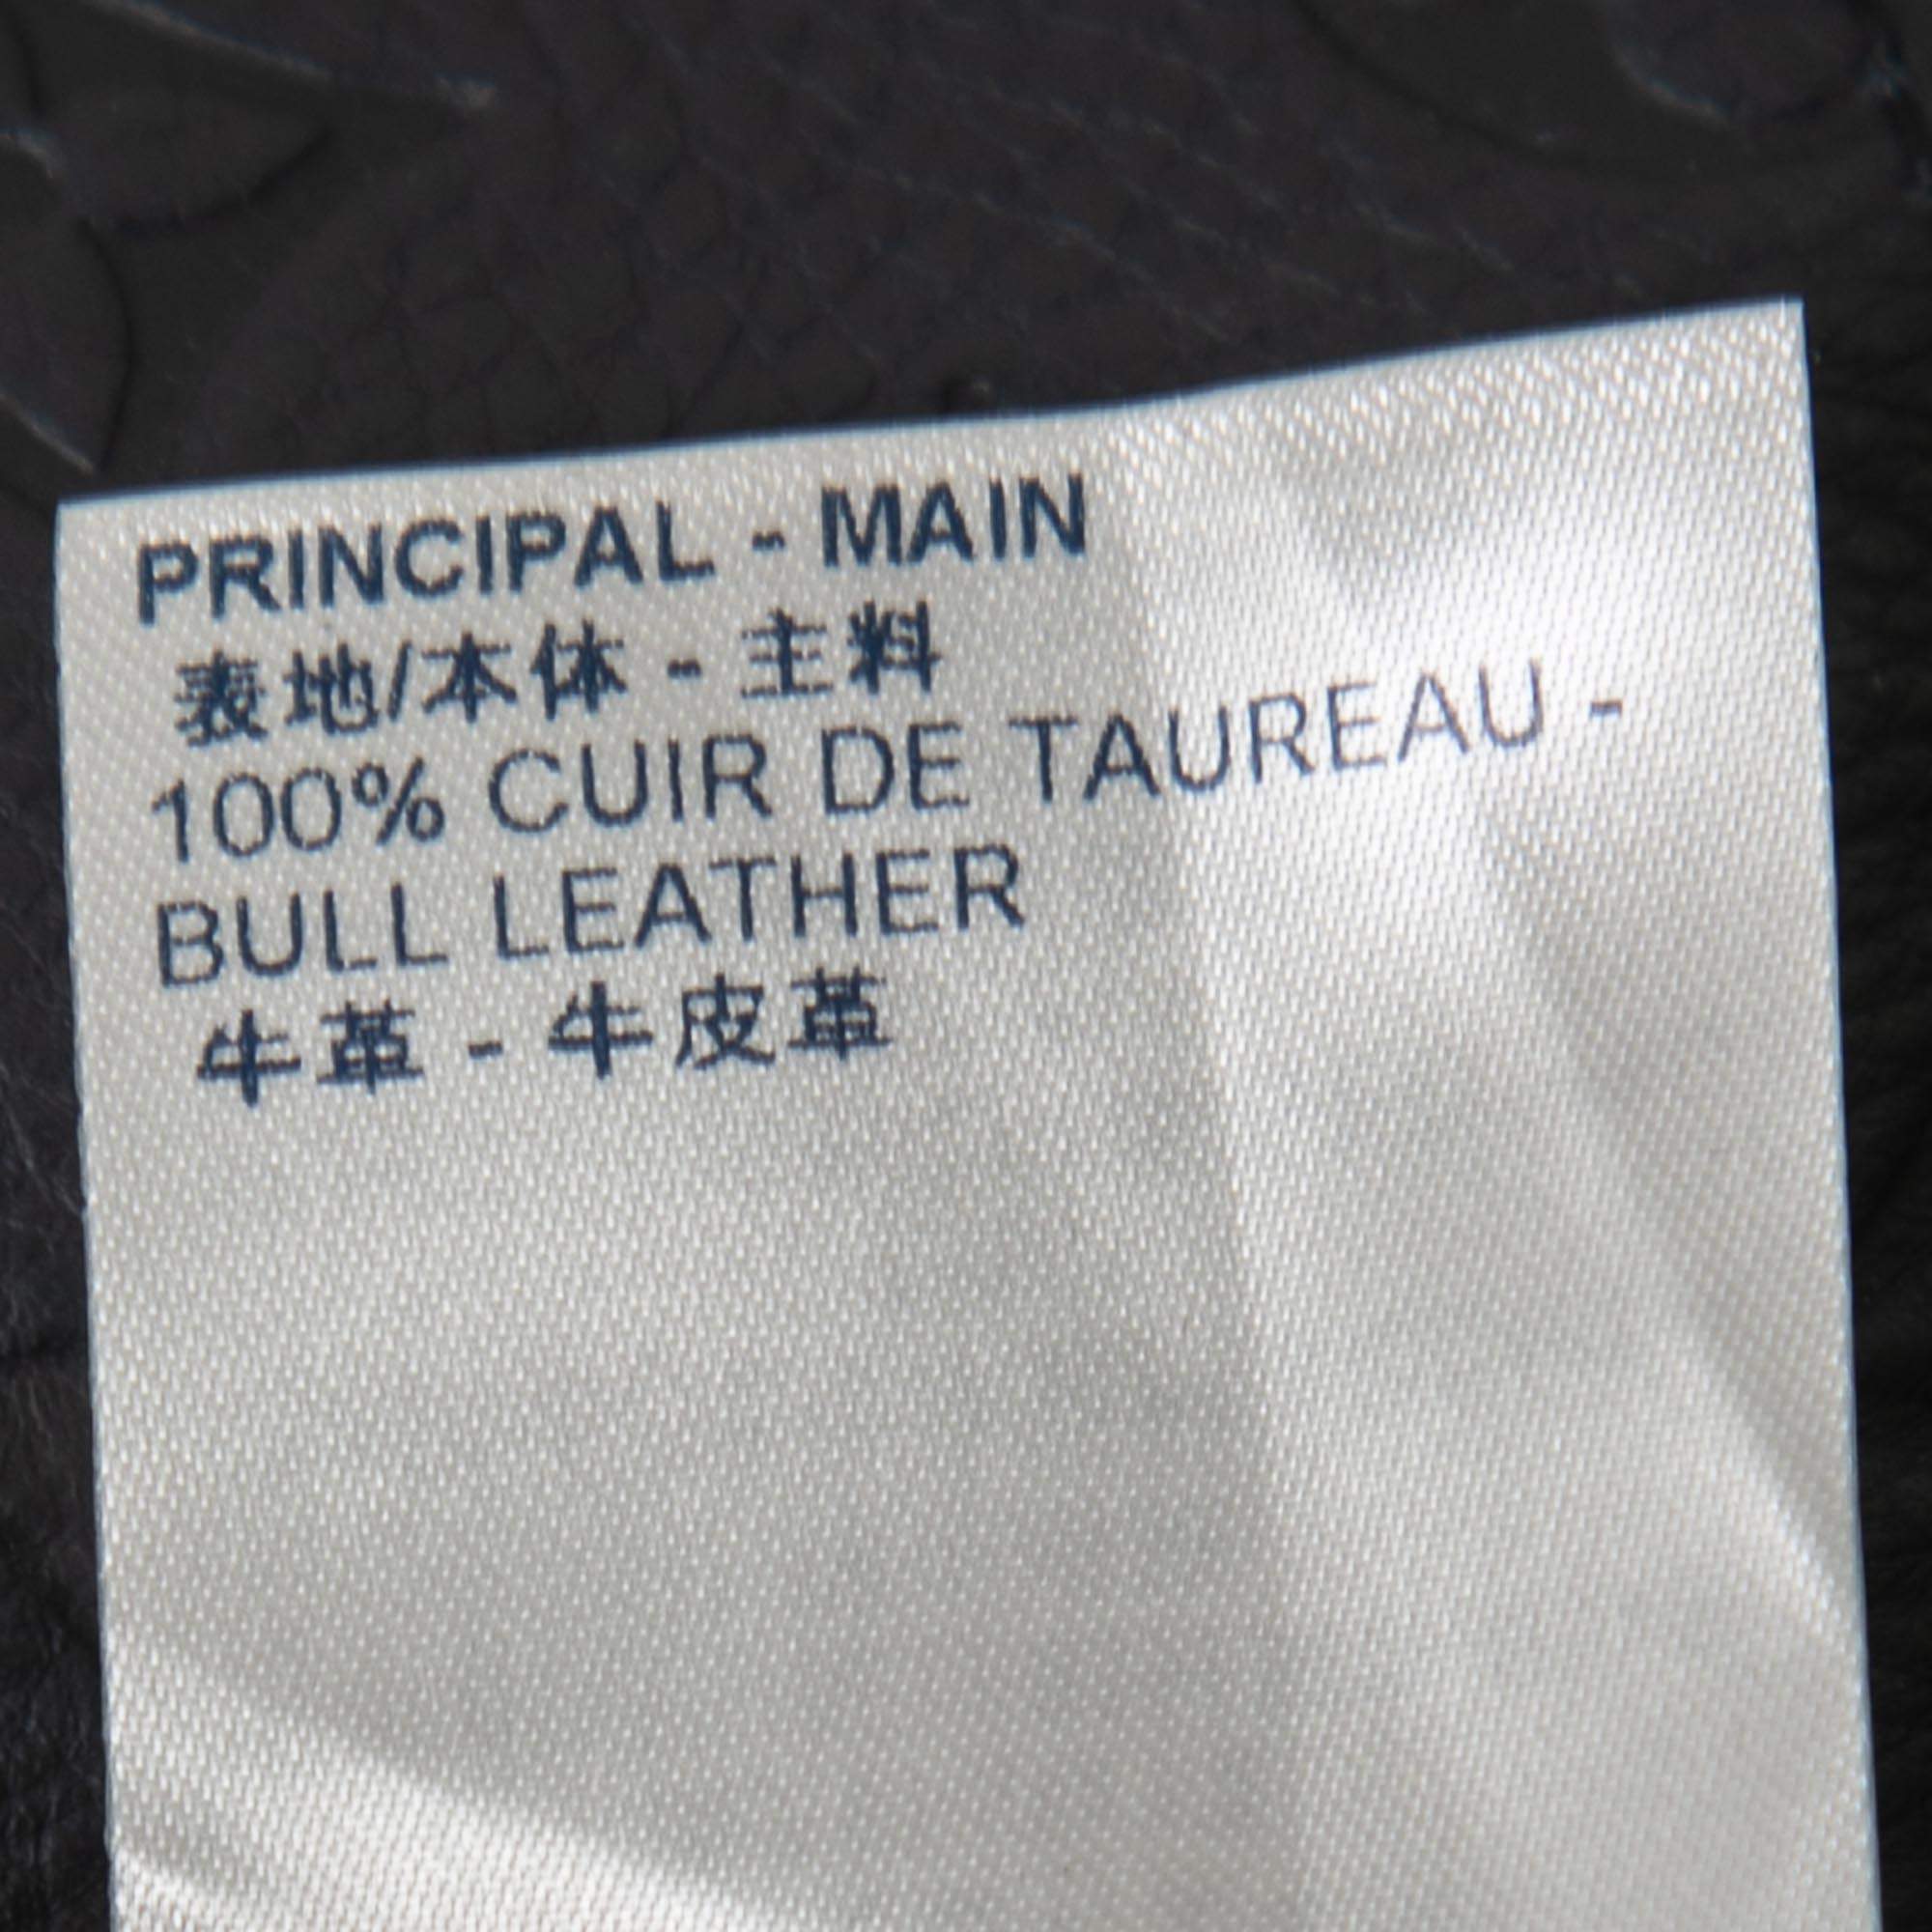 Louis Vuitton Navy Blue Monogram Embossed Leather Vest S Louis Vuitton |  The Luxury Closet